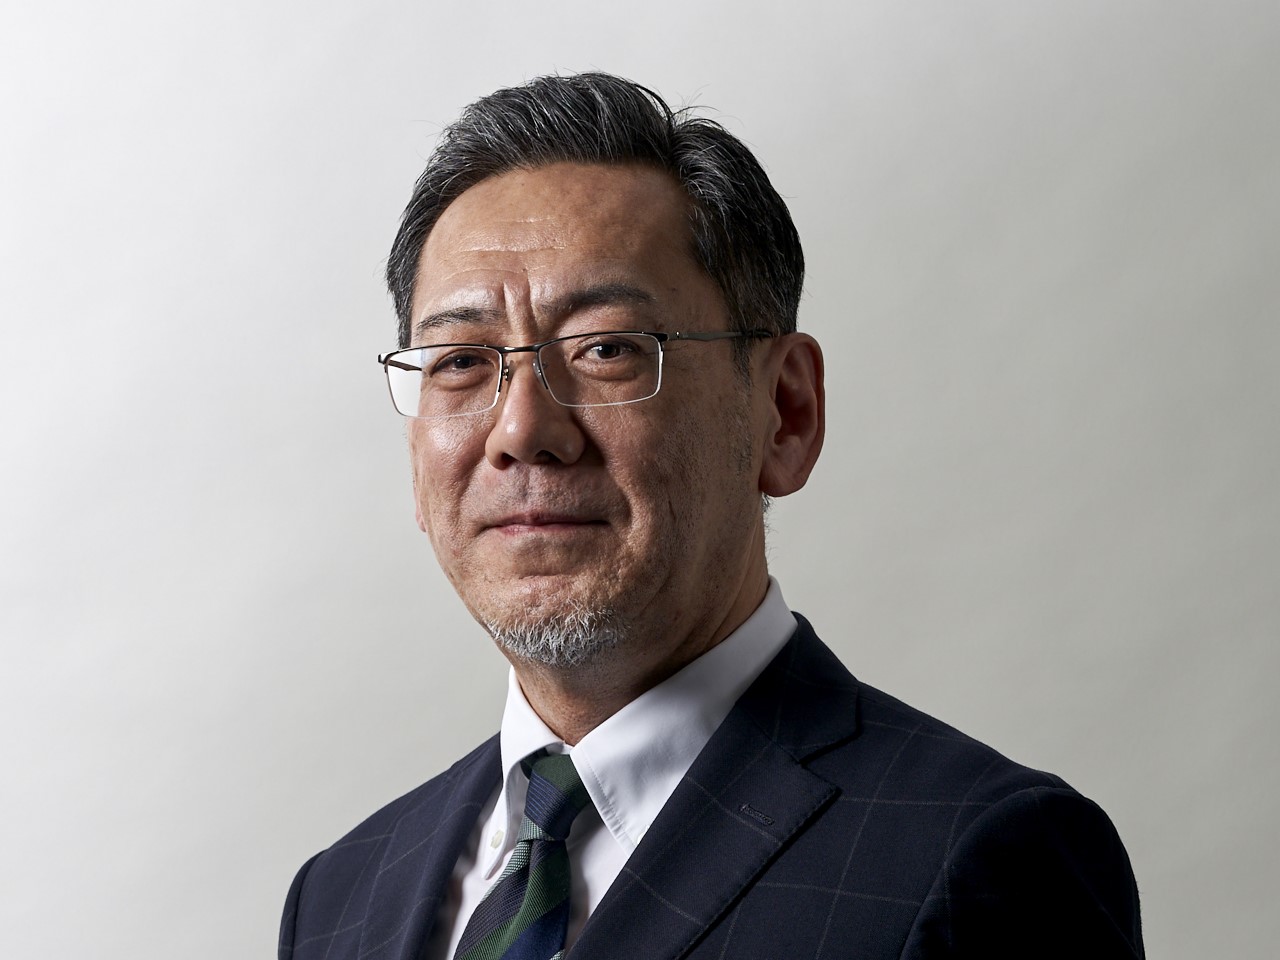 代表取締役社長　石井 澄晴氏
2014年に社長に就任してからは同社の発展に大きく貢献している。